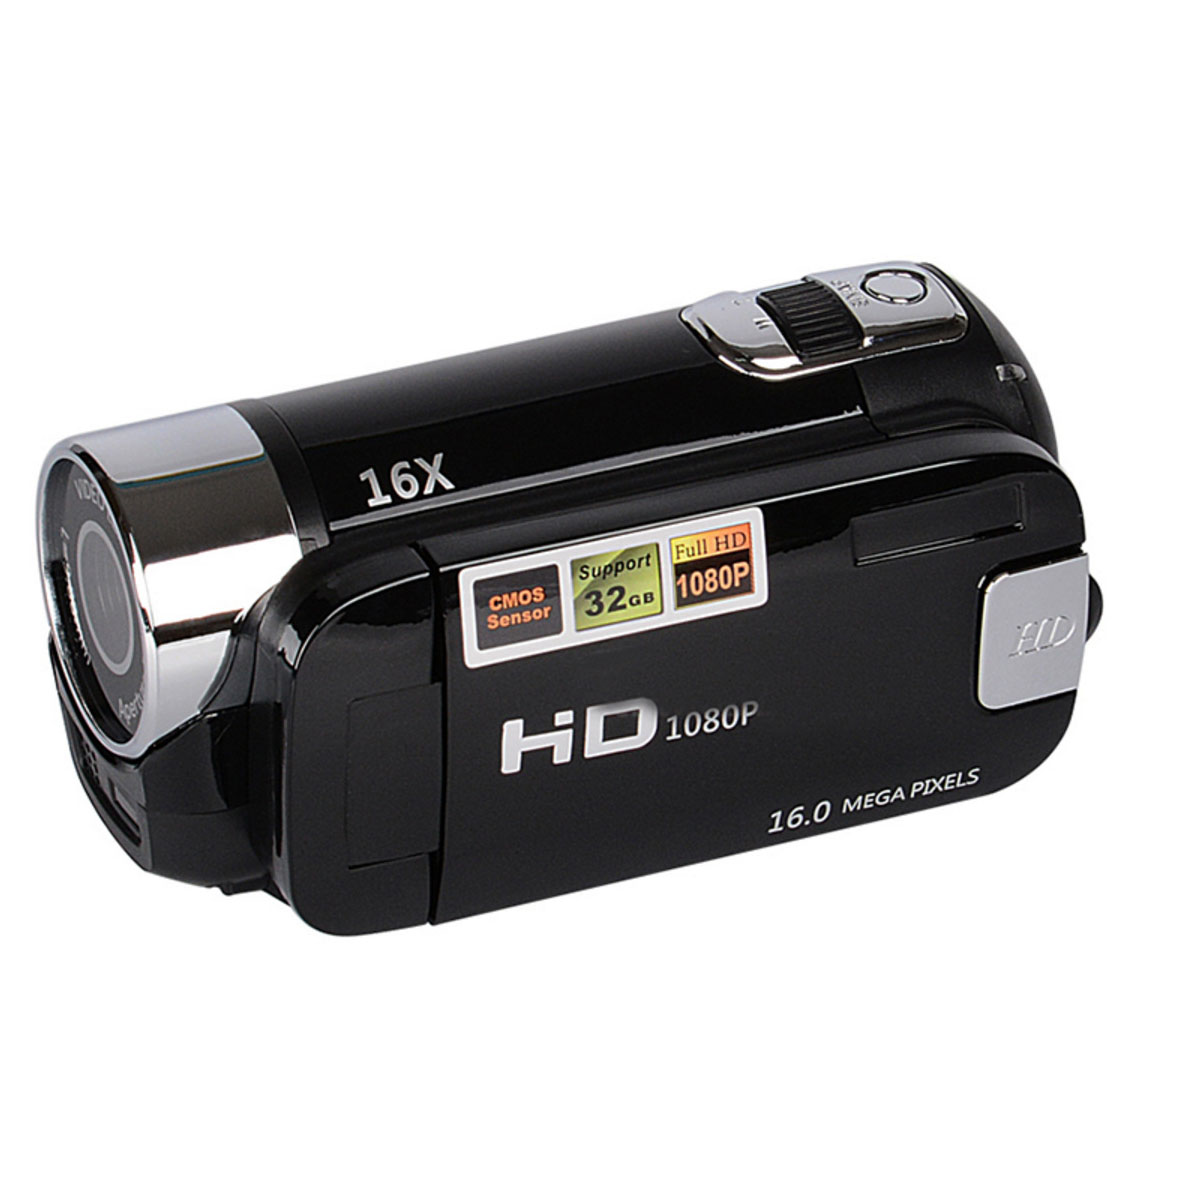 Camcorder drehbarem 270° mit Zoom Videokamera Display FHD und Camcorder 16-fachem Zoom 1080P SYNTEK opt.